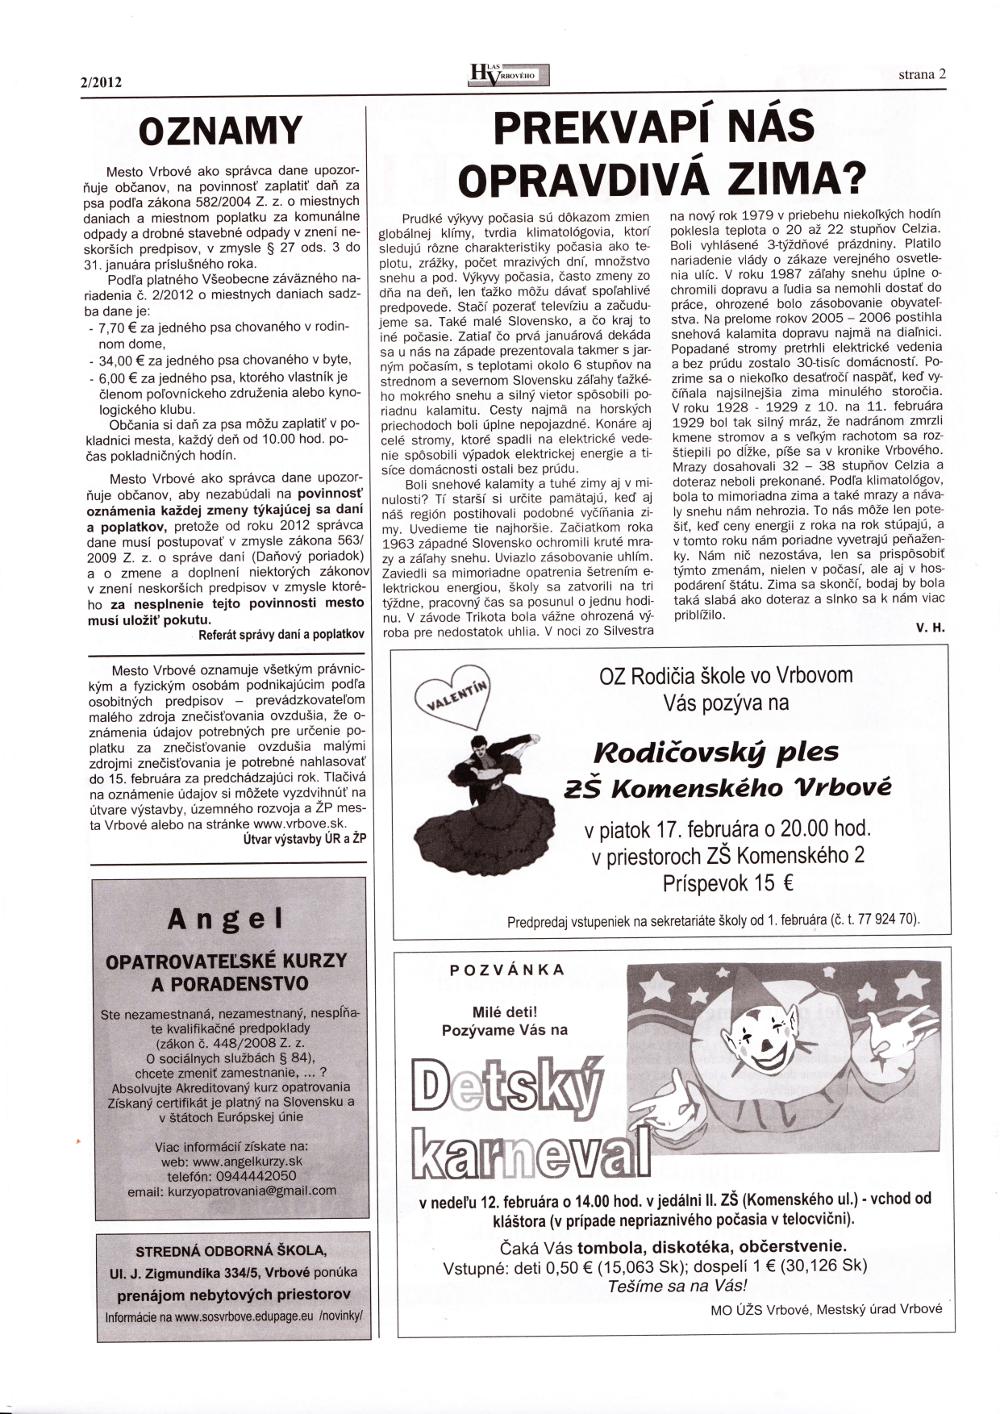 Hlas Vrbového 02/2012, strana 2